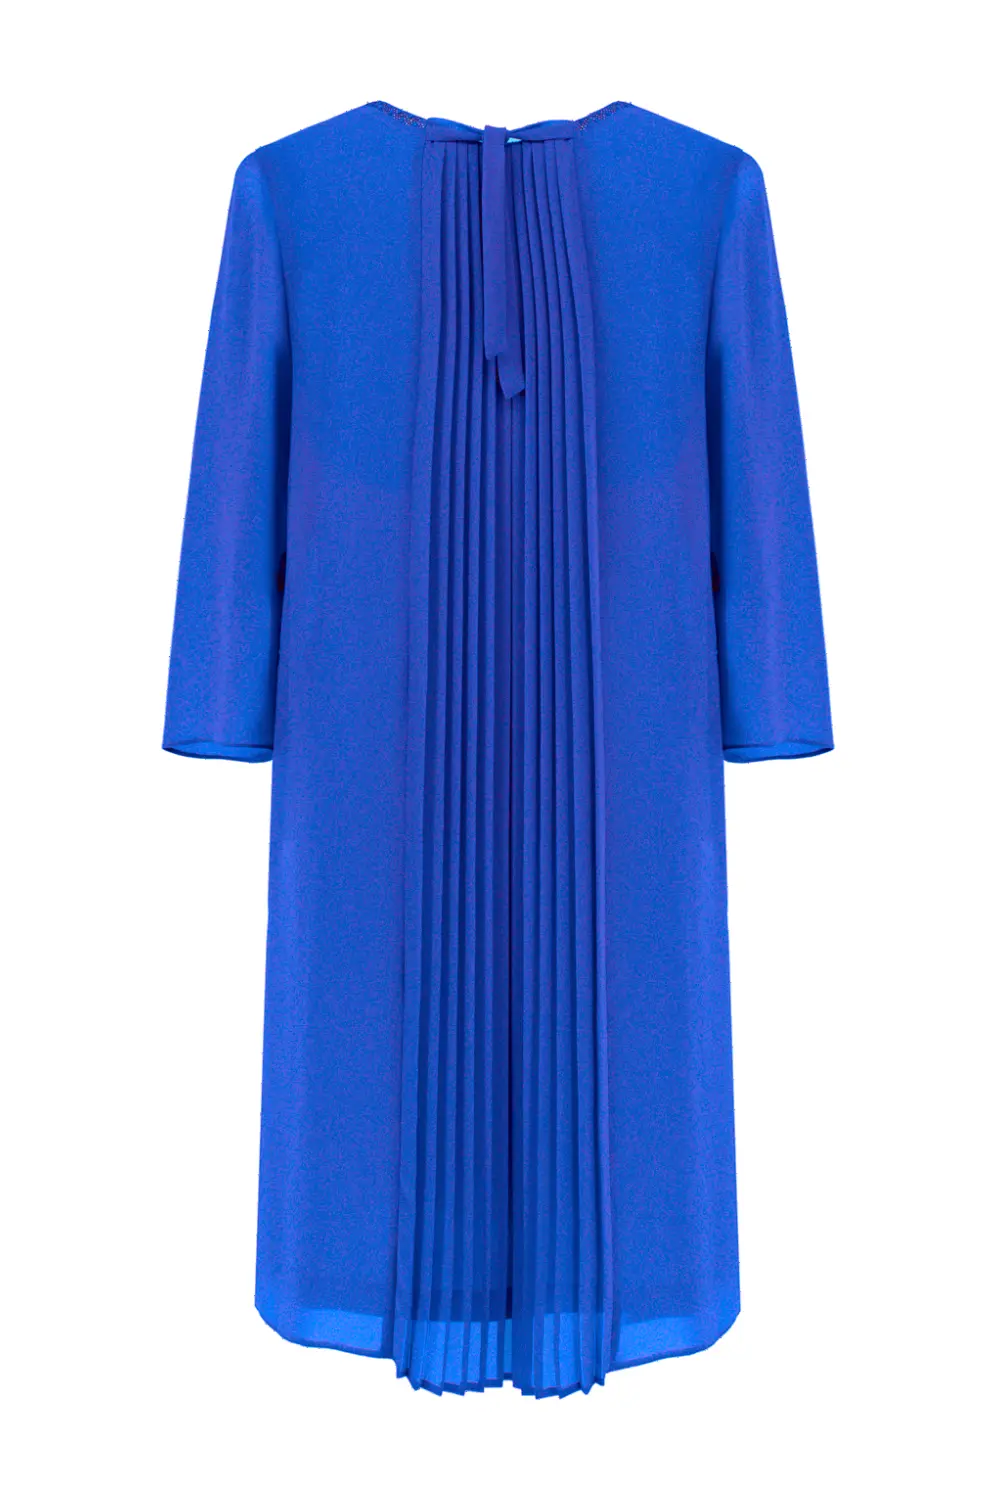 Wizytowa sukienka szyfonowa z plisowaniem kobaltowa ekskluzywna sukienka na wesele polska marka Vito Vergelis